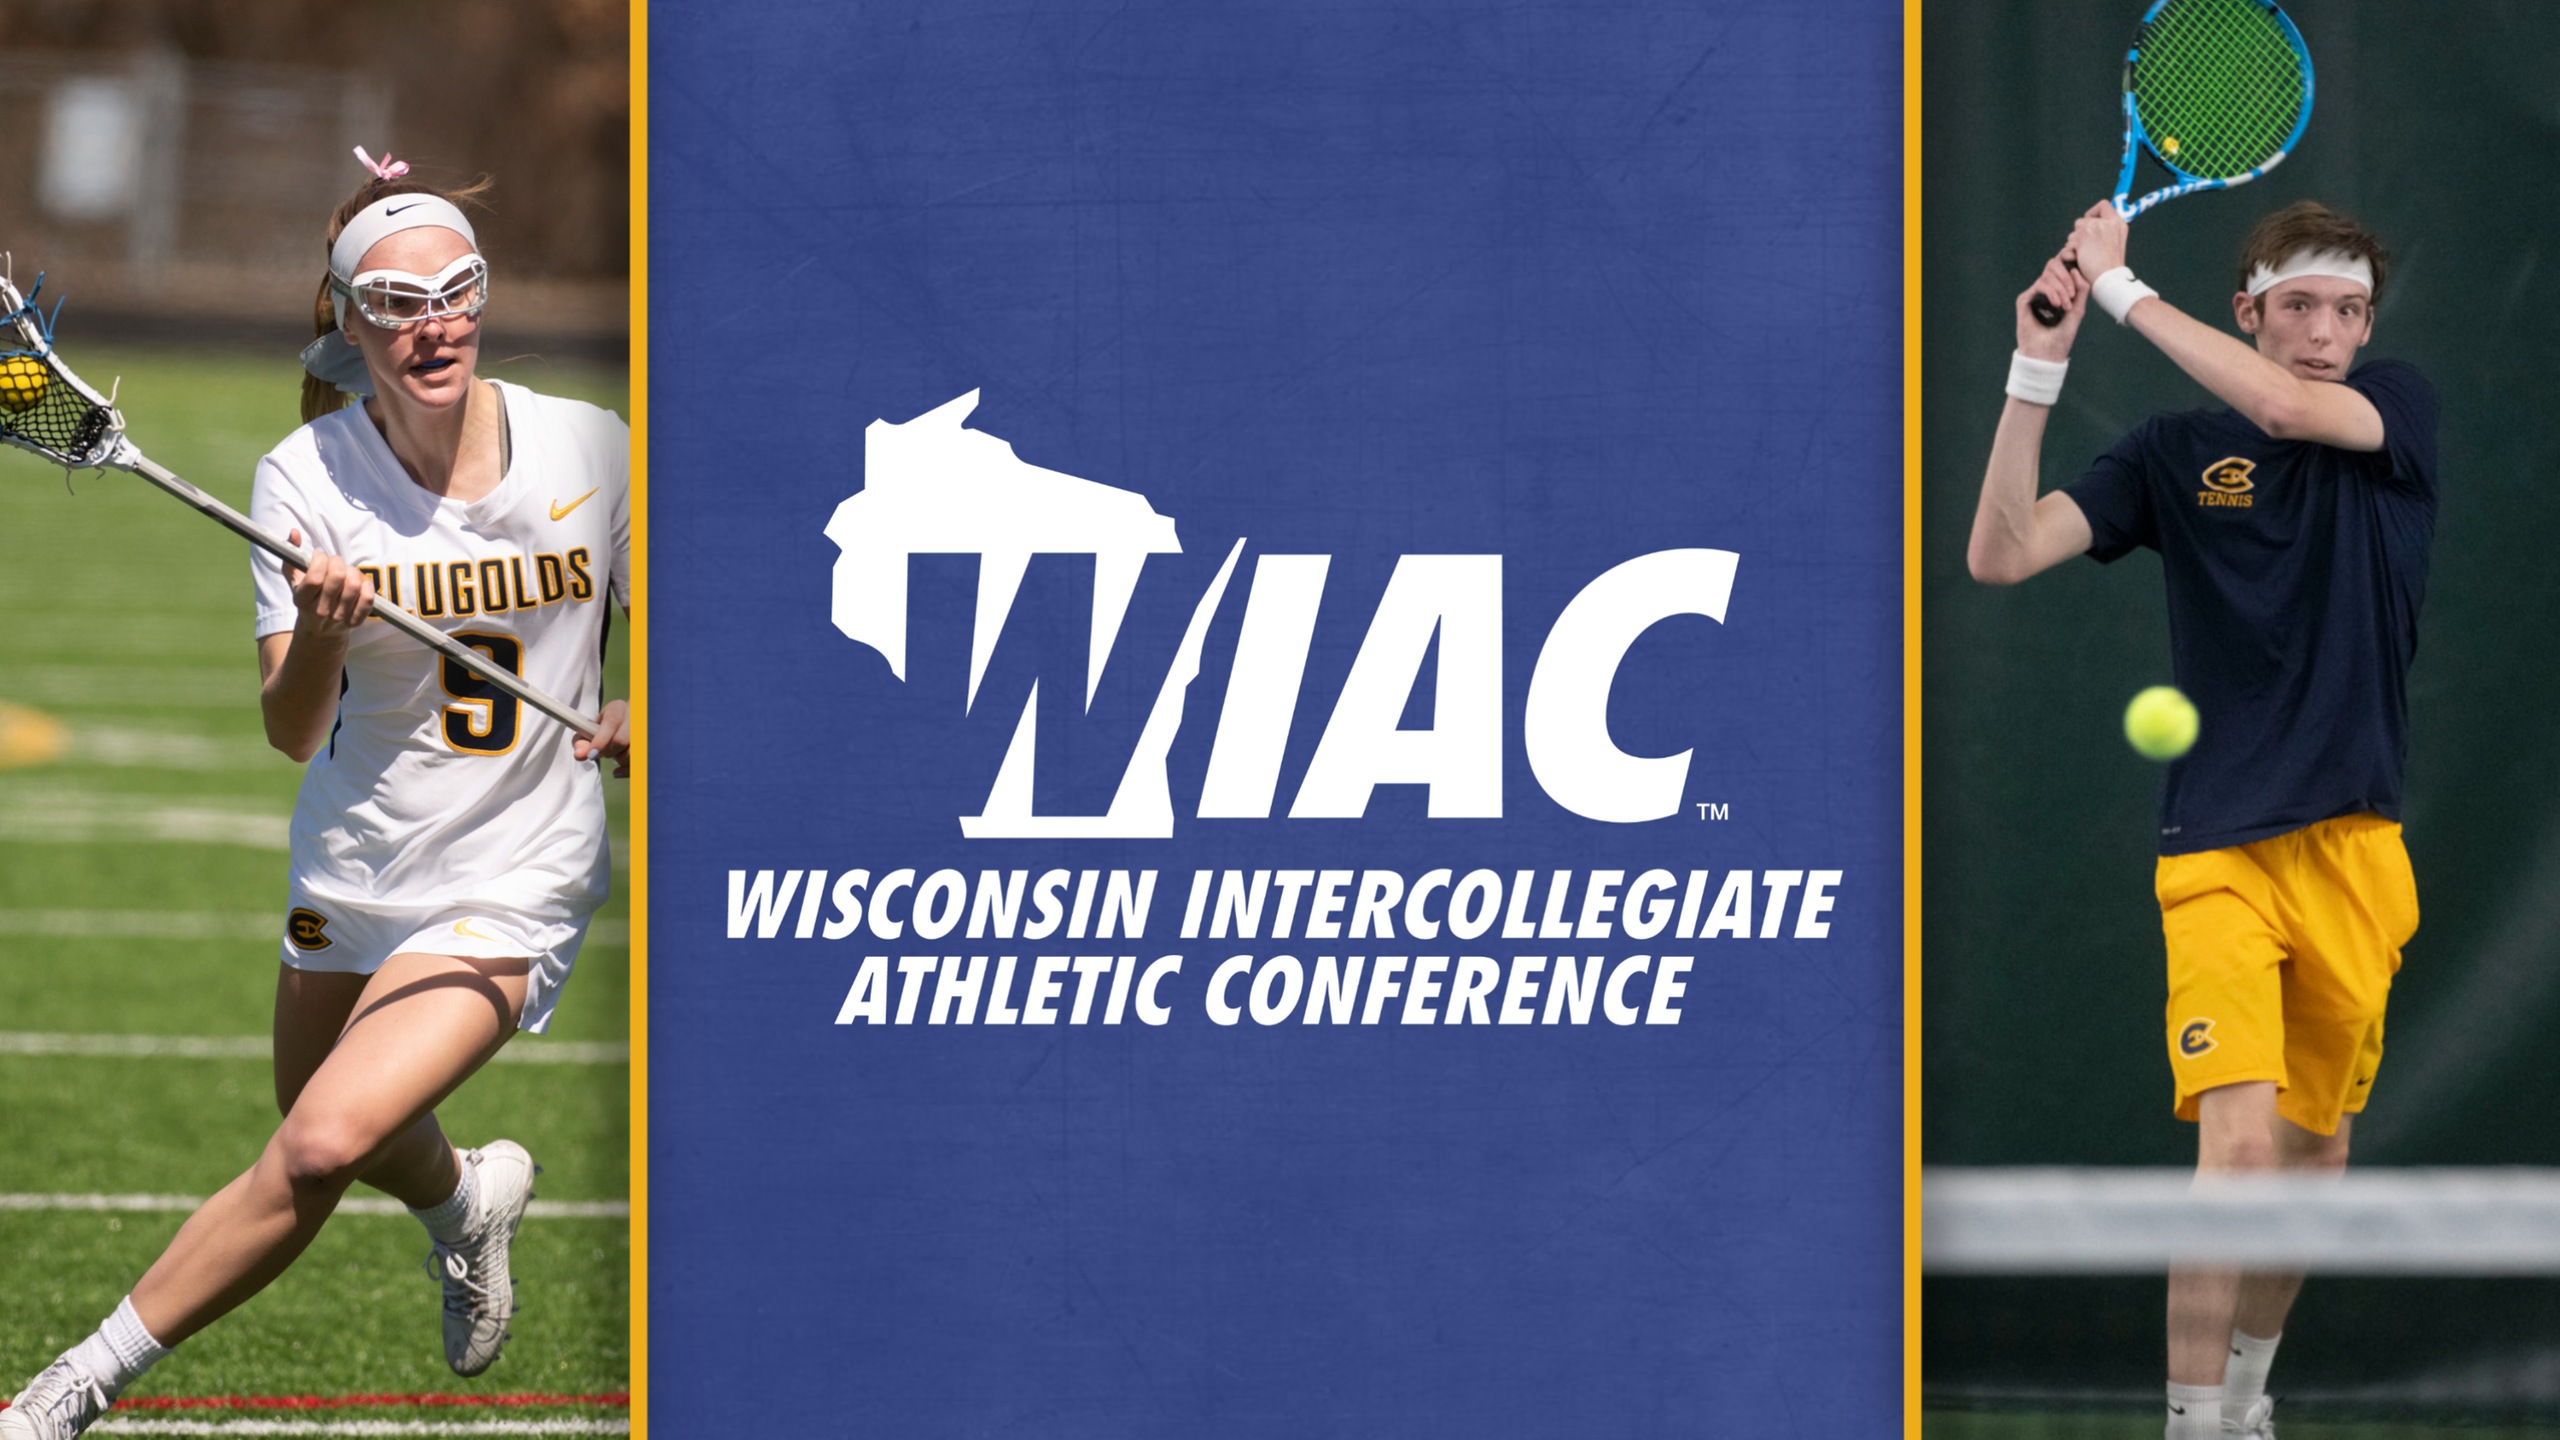 WIAC to add championships for women's lacrosse, men's tennis